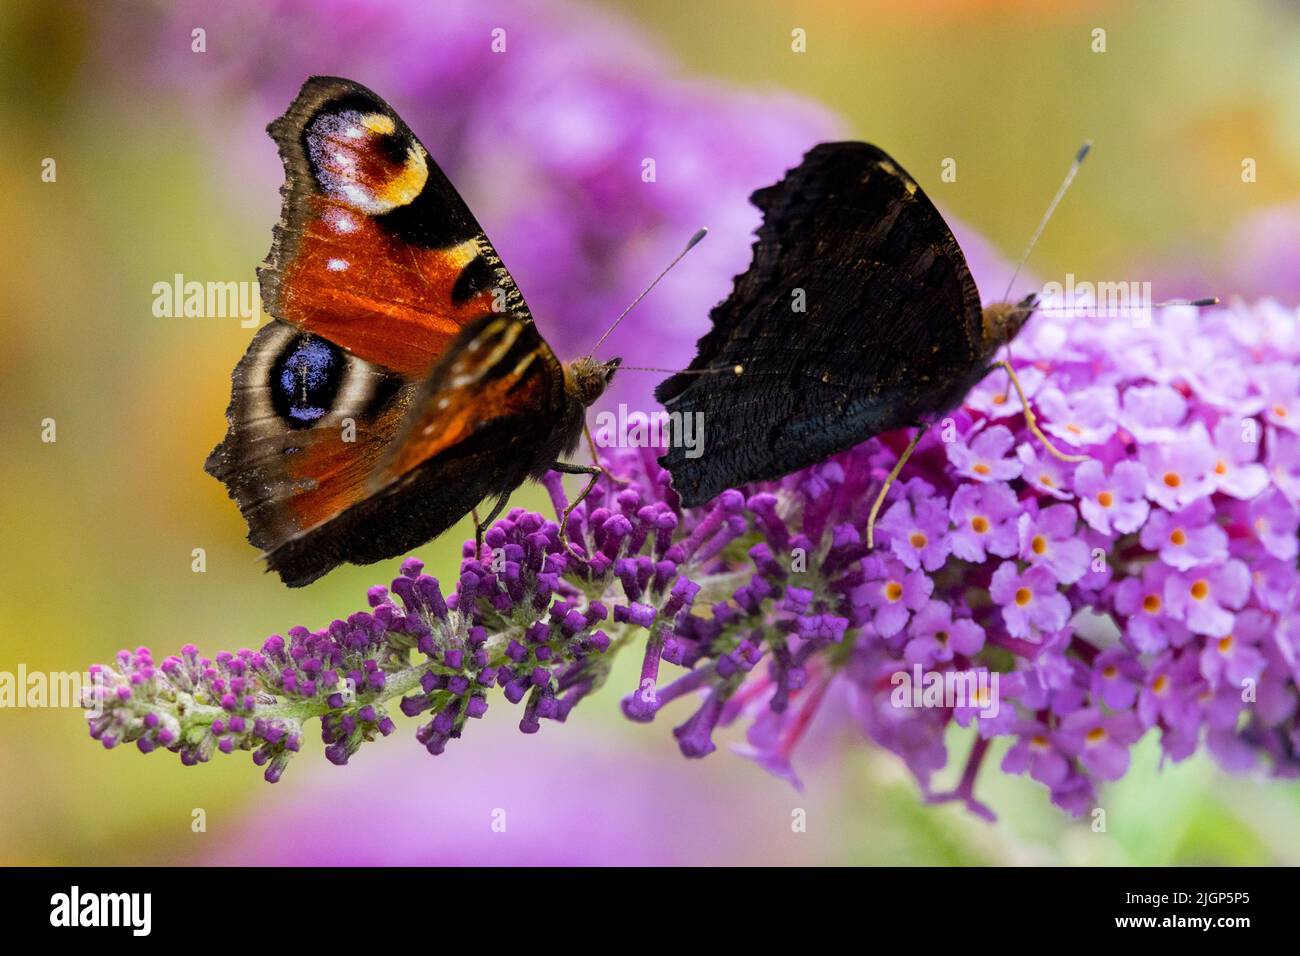 Two butterflies on Butterfly bush flower, Peacock butterfly Aglais io, Butterflies on Flower, Nectaring Stock Photo